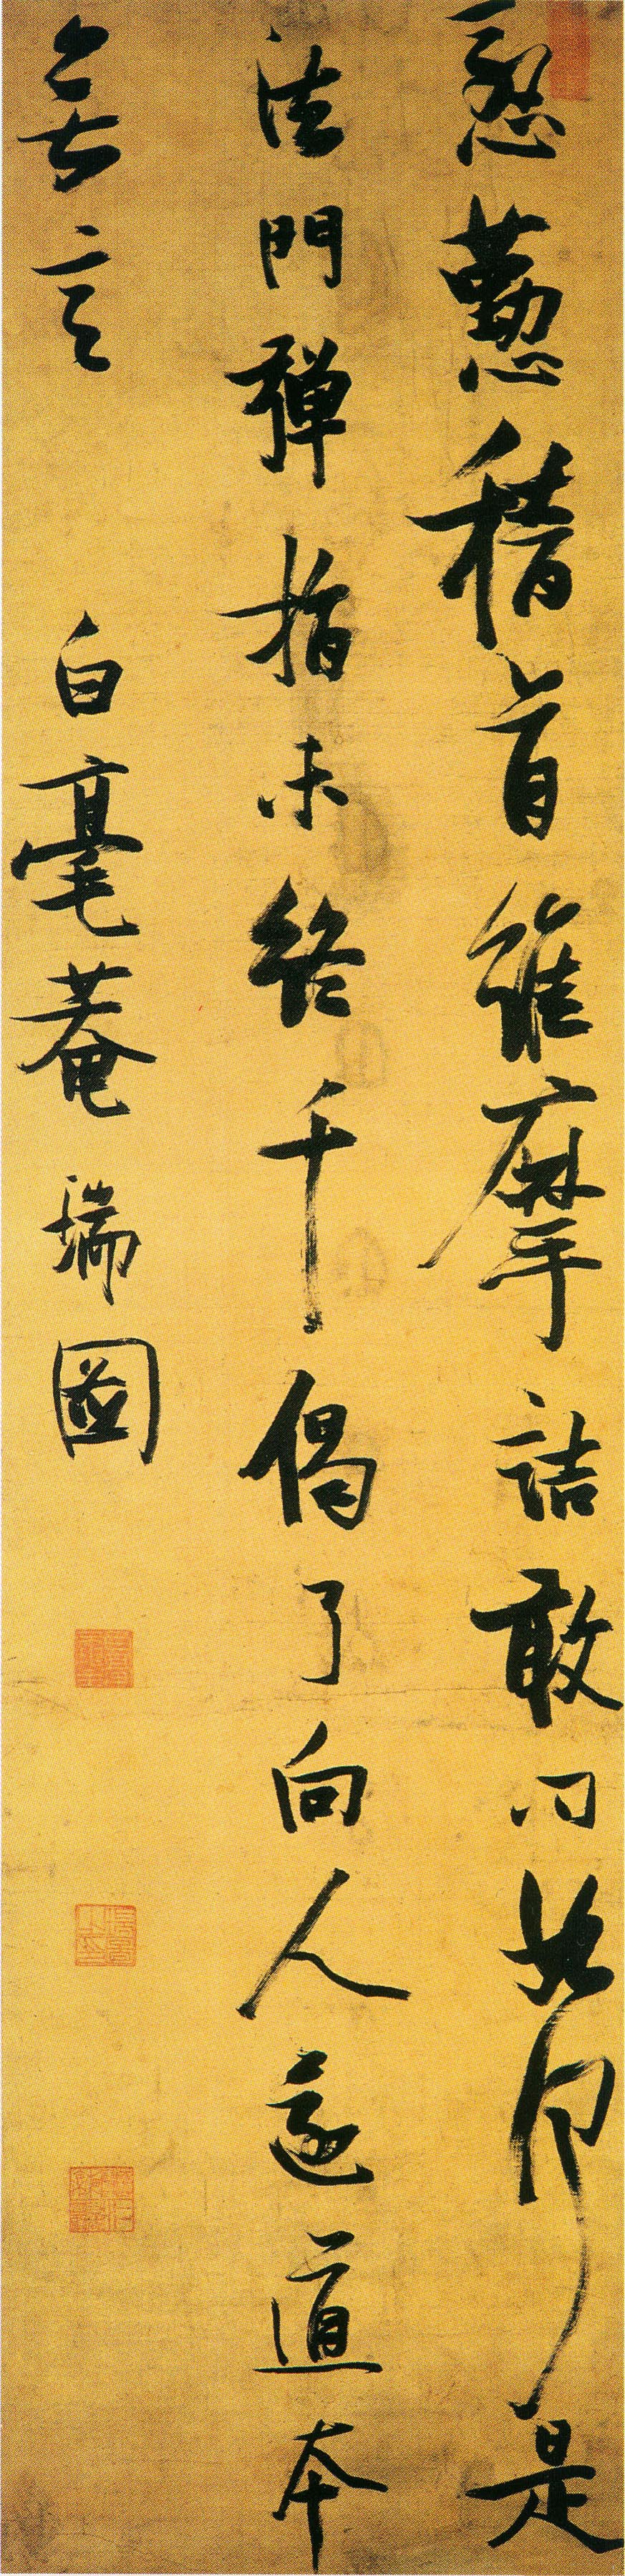 张瑞图草书《苏轼无言亭》诗轴-南京博物院藏 (图1)